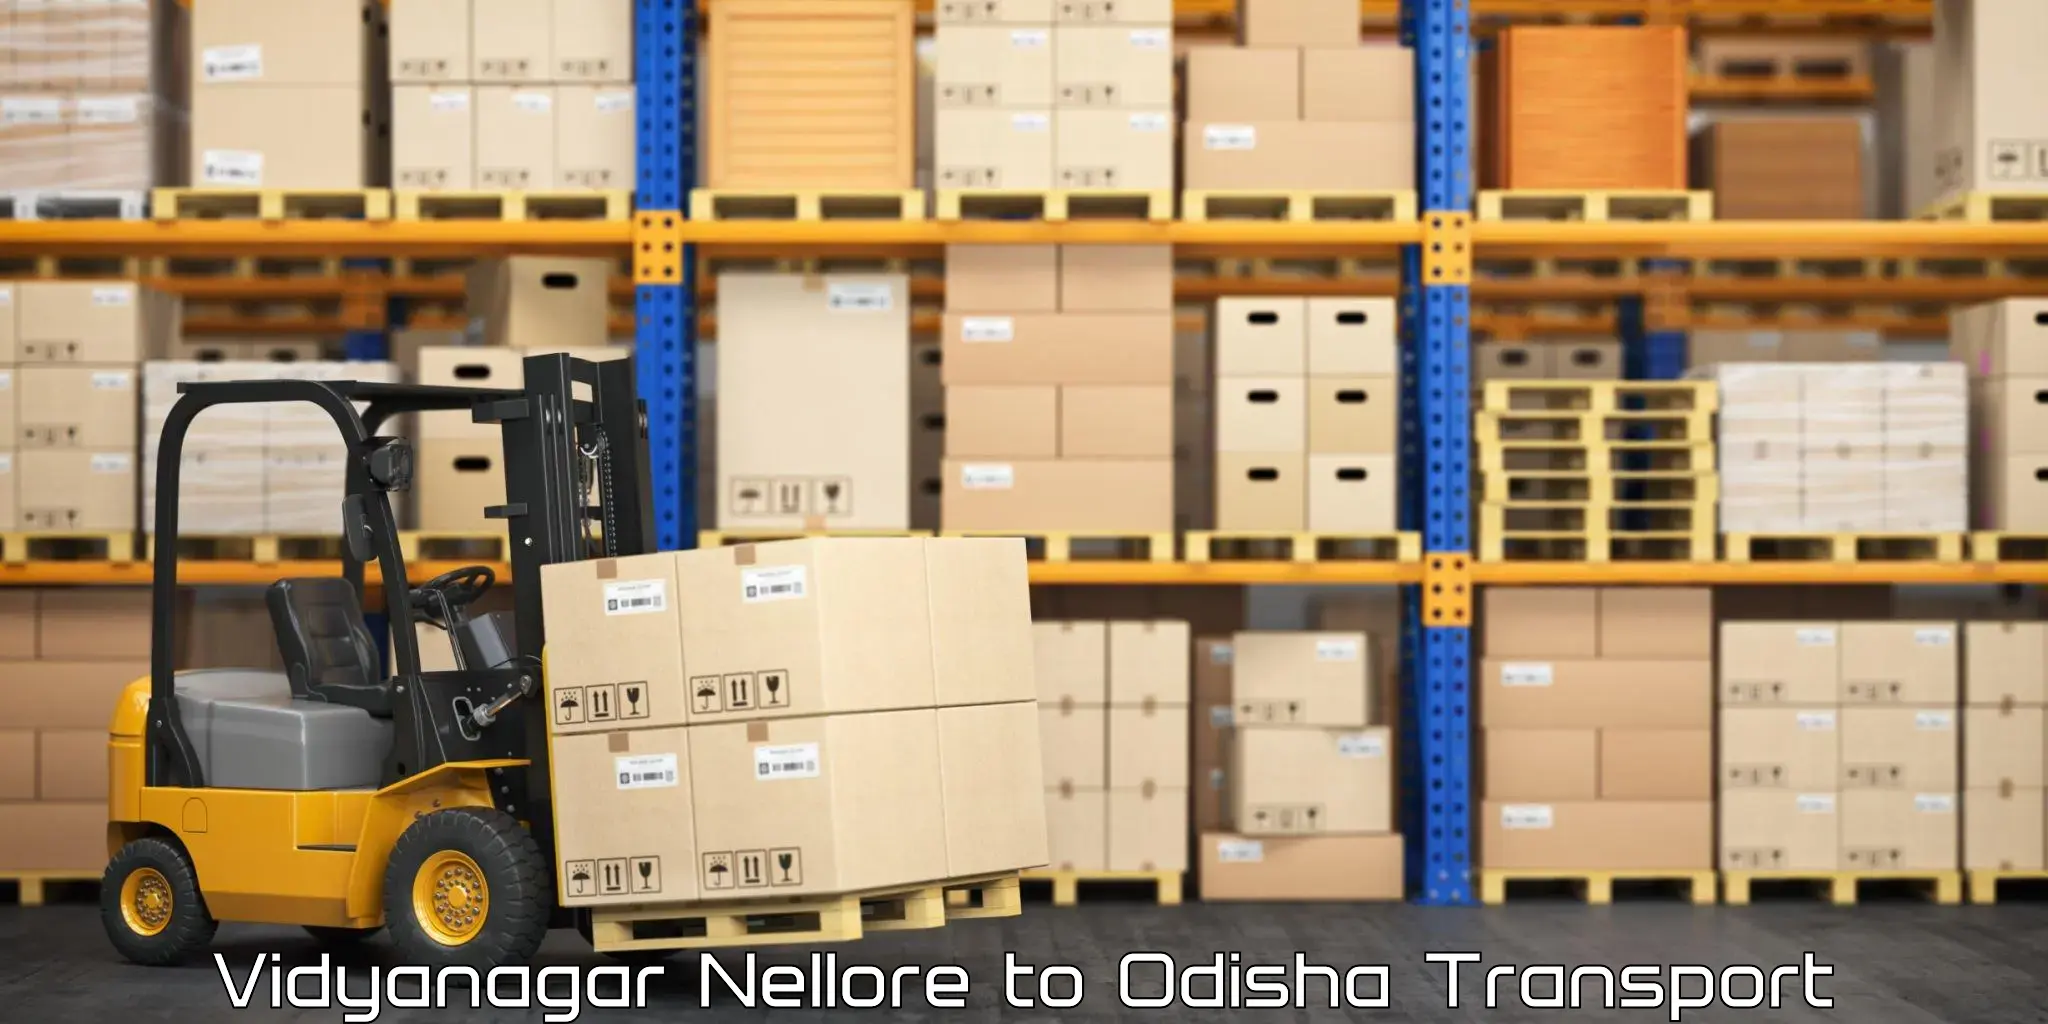 Cargo transportation services Vidyanagar Nellore to Baisinga